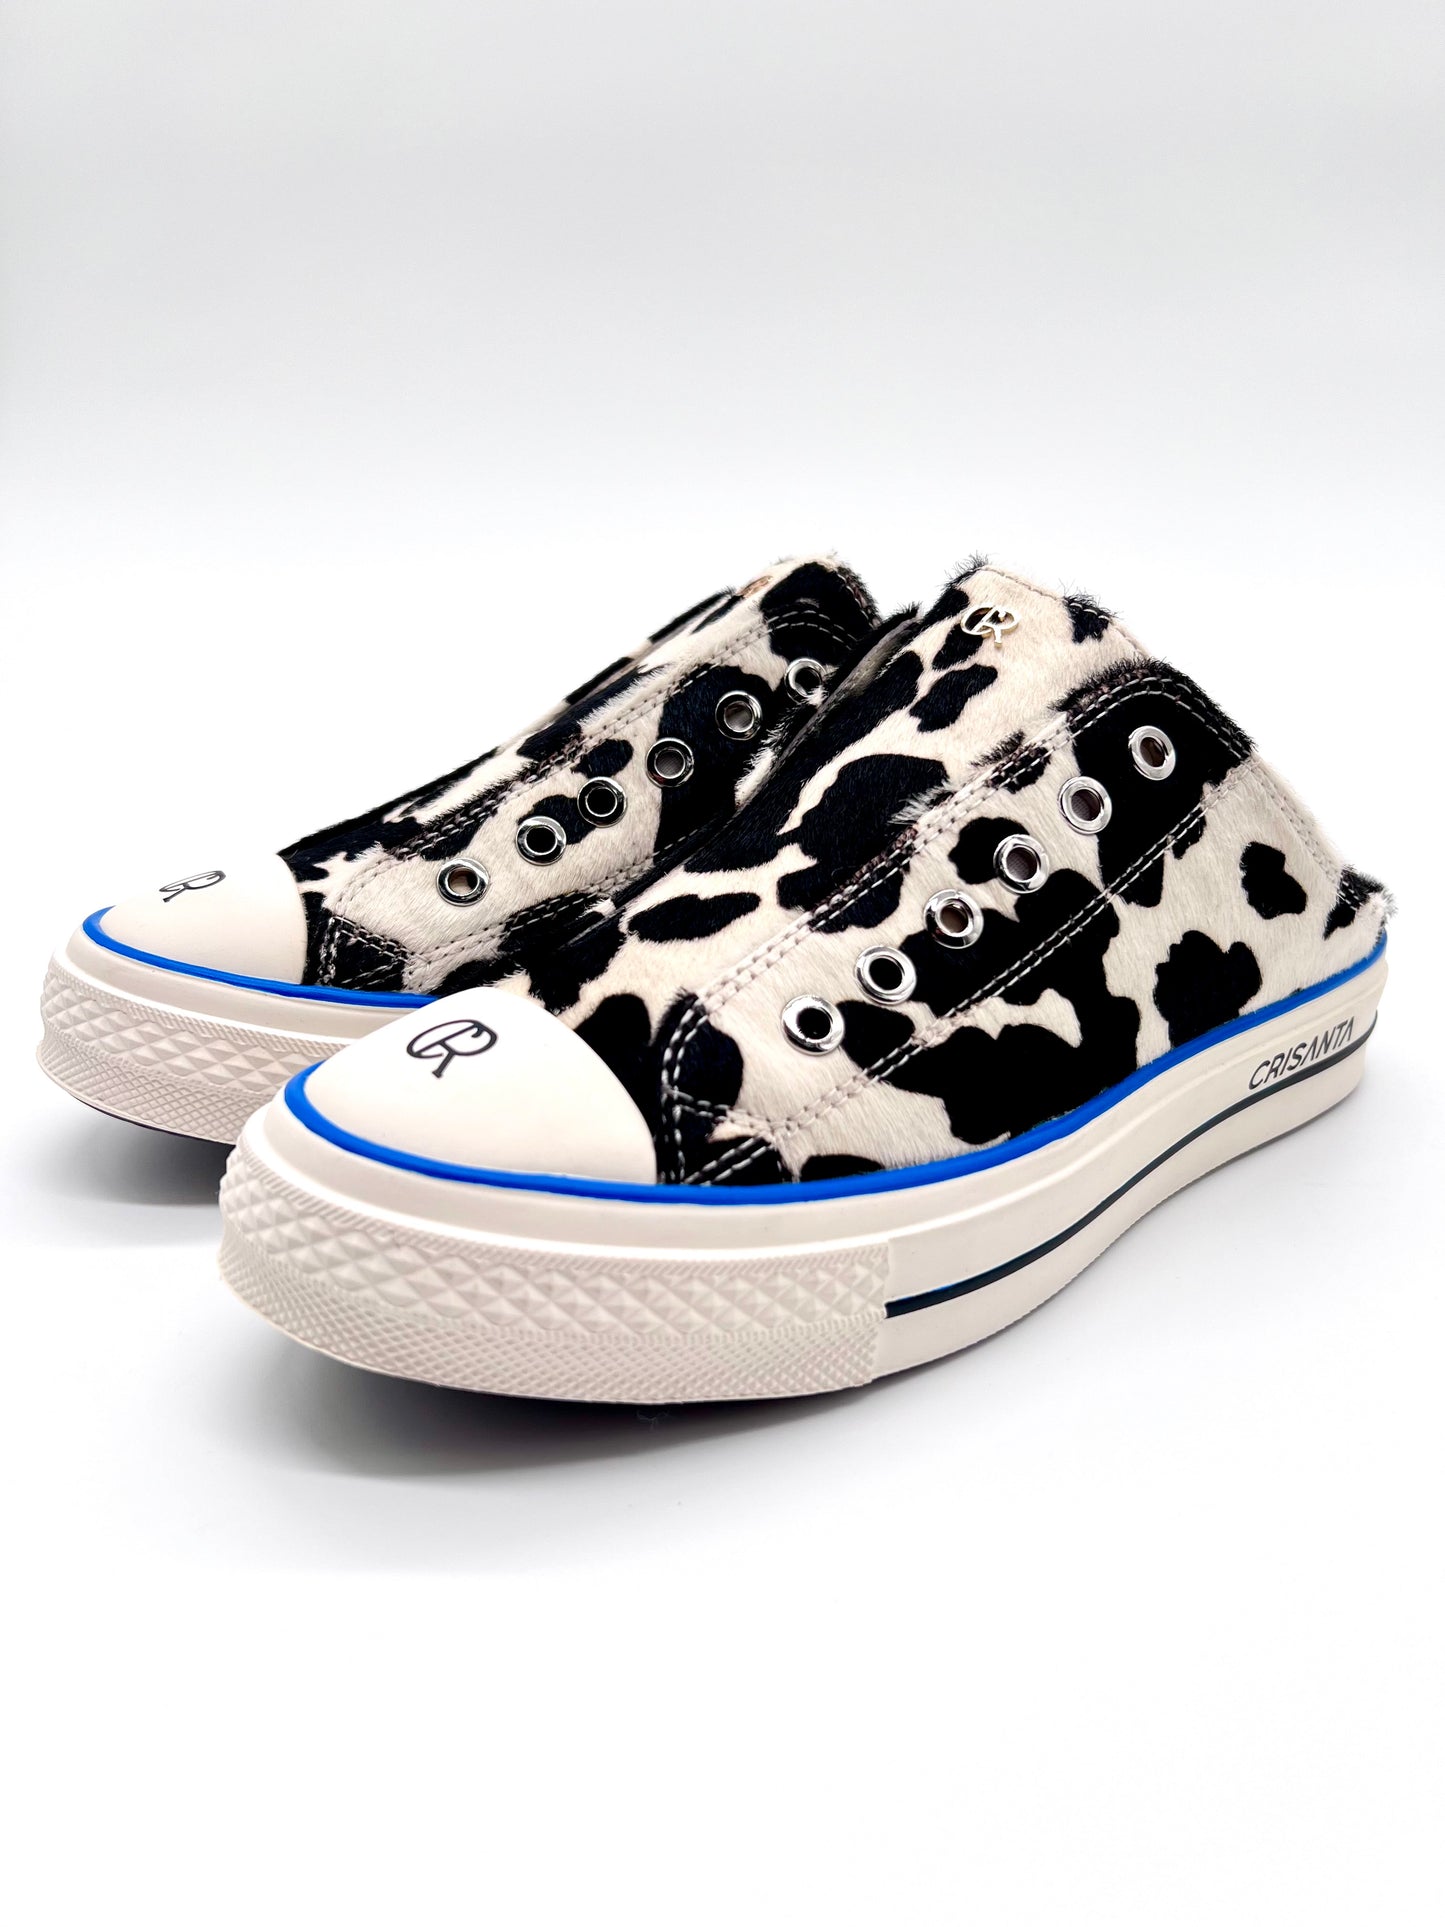 Sneaker slippers, slip-on shoe